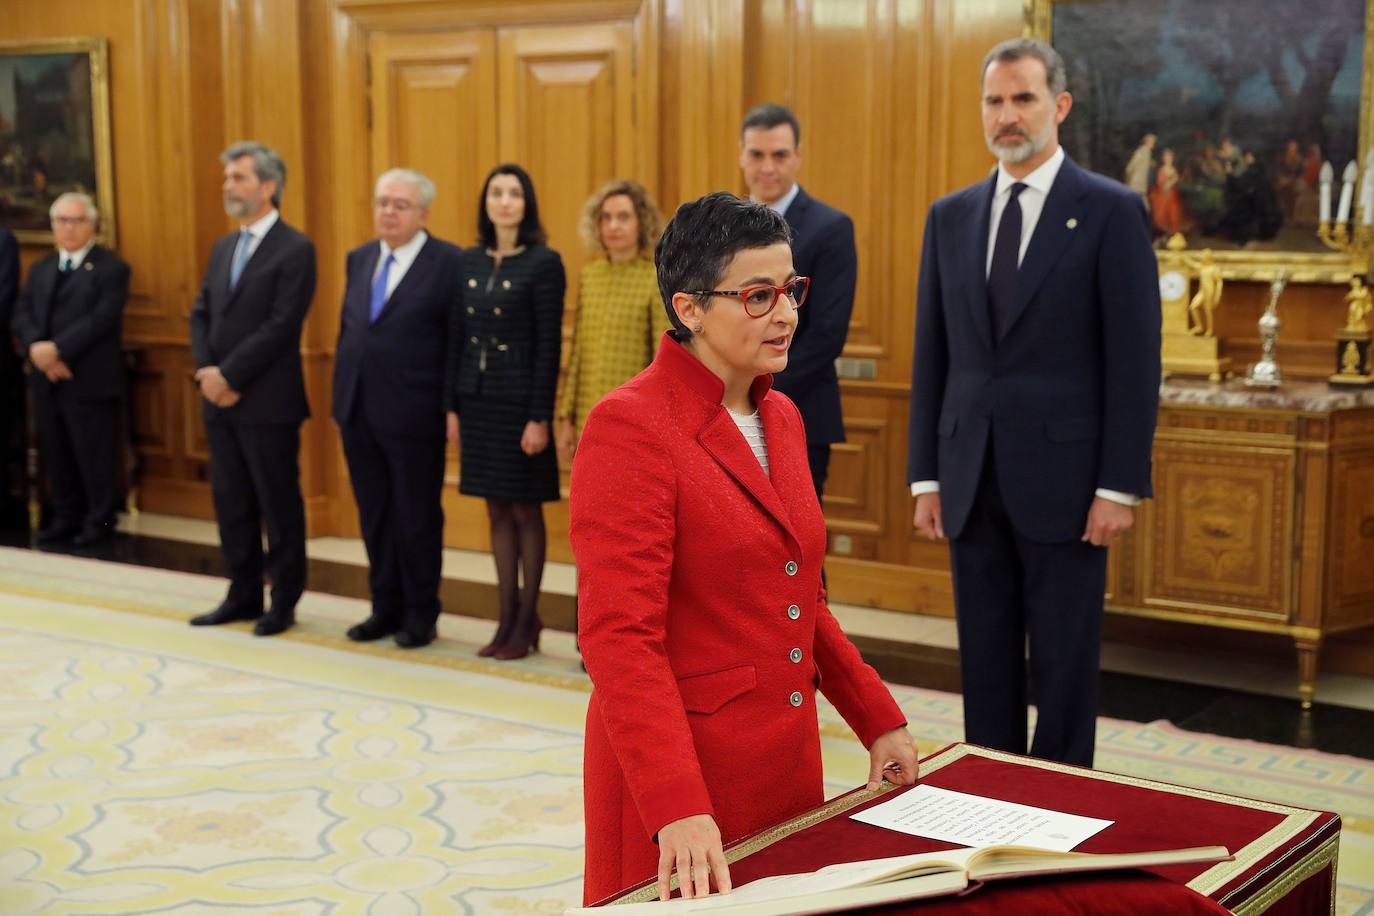 La nueva ministra de Asuntos Exteriores, Unión Europea y Cooperación, Arancha González Laya, promete su cargo ante el rey Felipe VI.